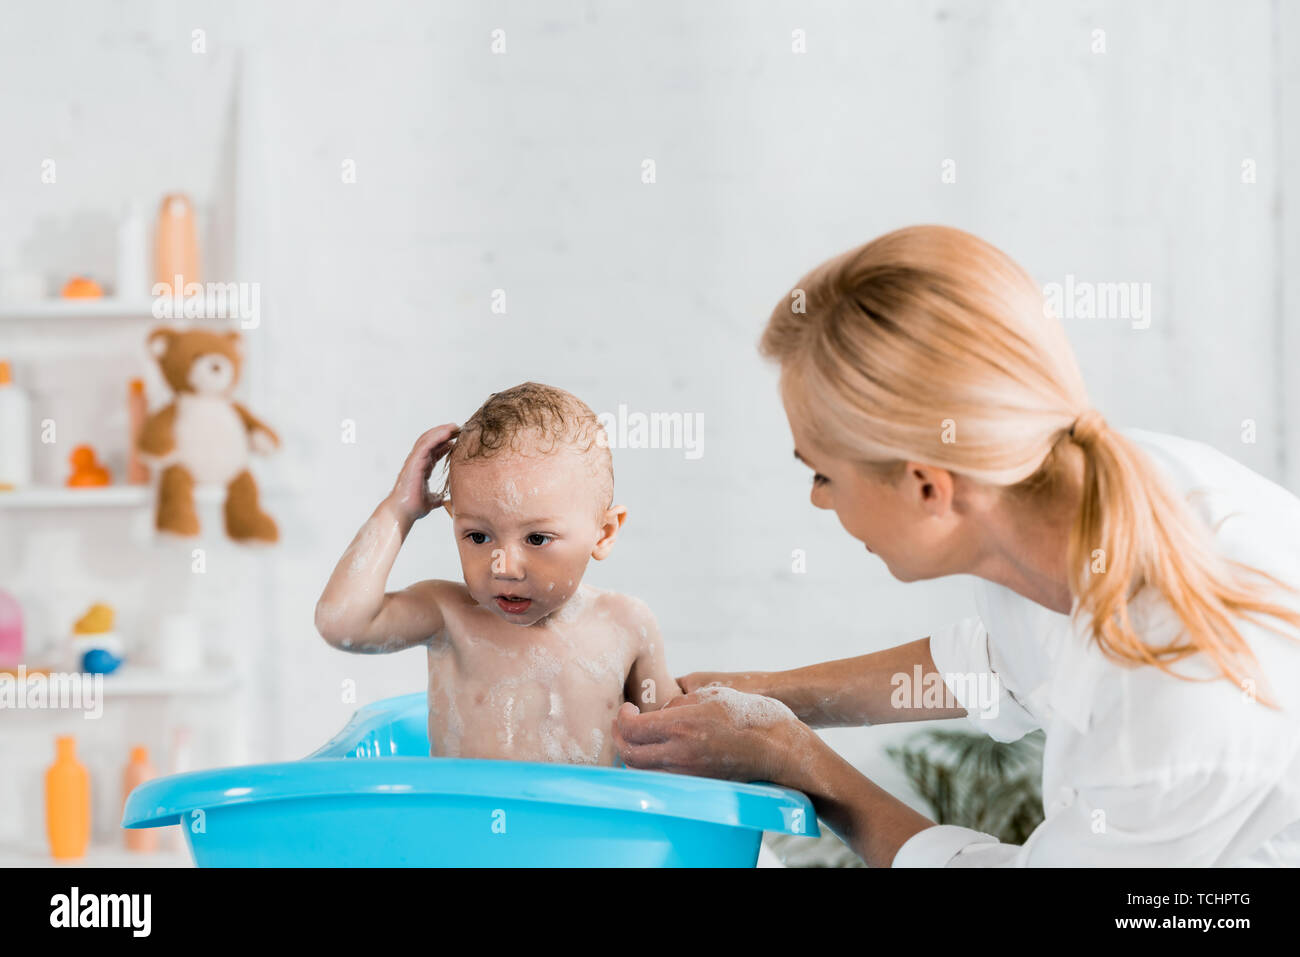 Помыла сына в ванной. Мама с сыном играют в ванной. Семейная эмоция радость в ванной комнате. Мама погружает сына в ванну. Мама ванна 18